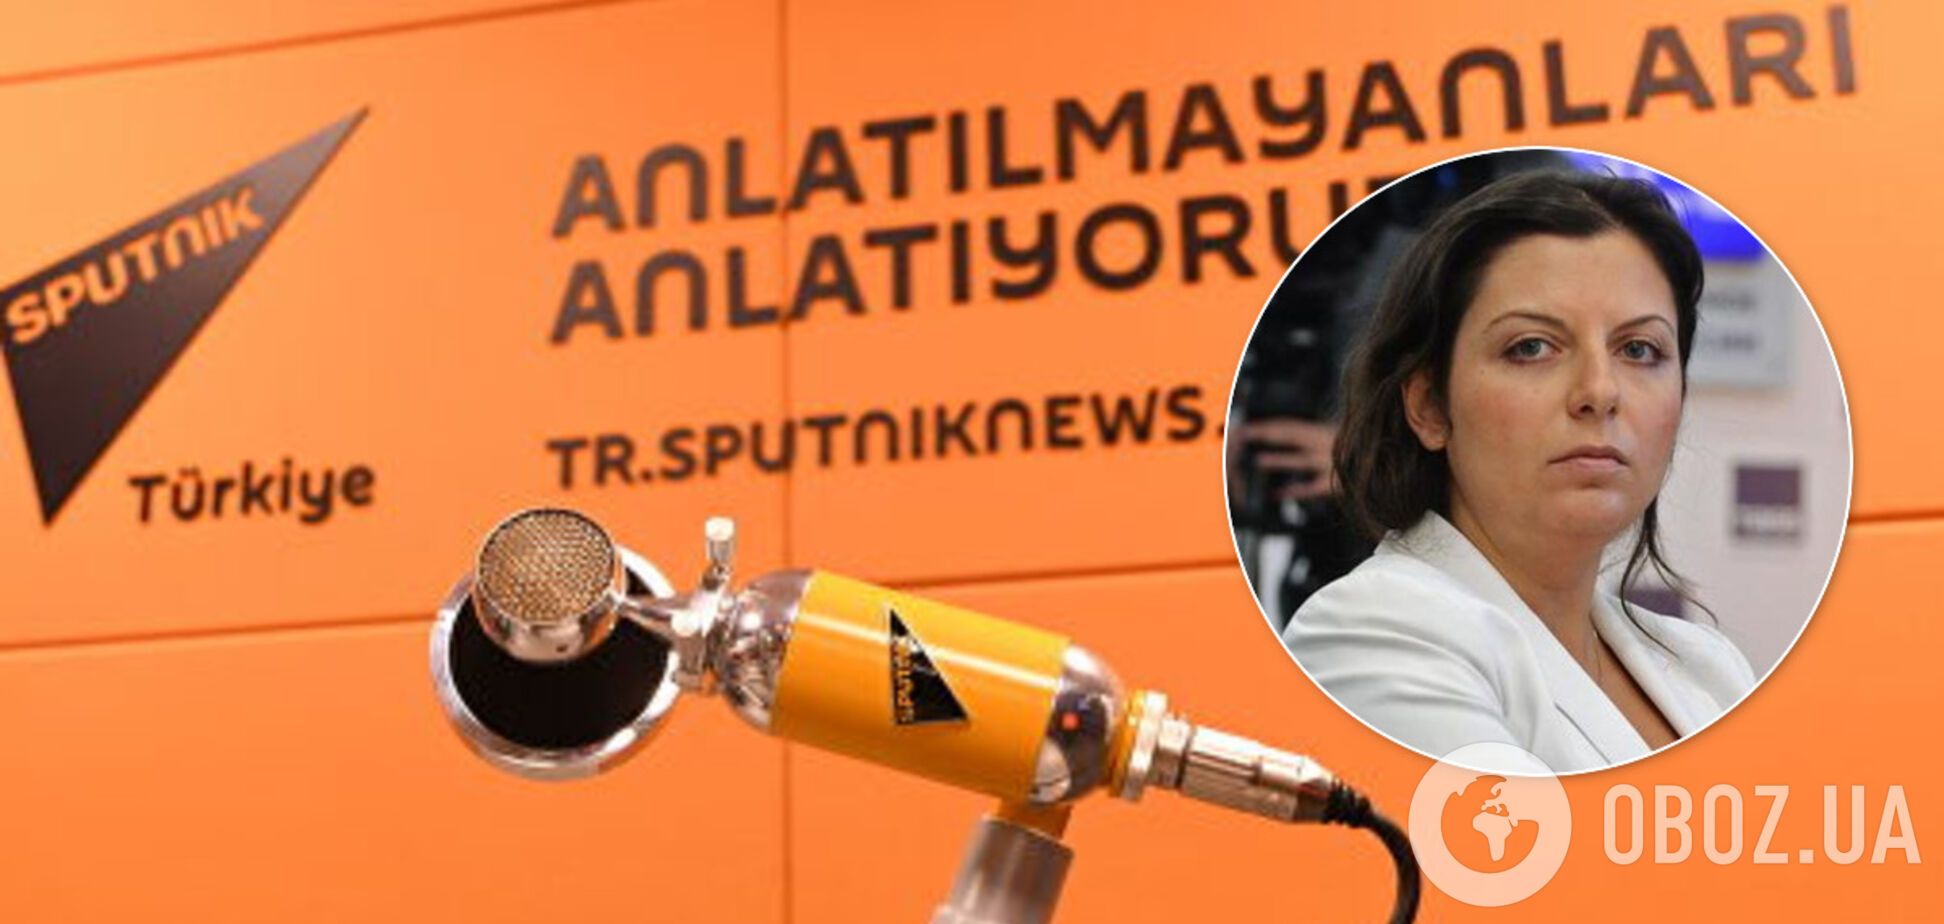 Сотрудники 'Sputnik Турция' заявили о нападении в Анкаре